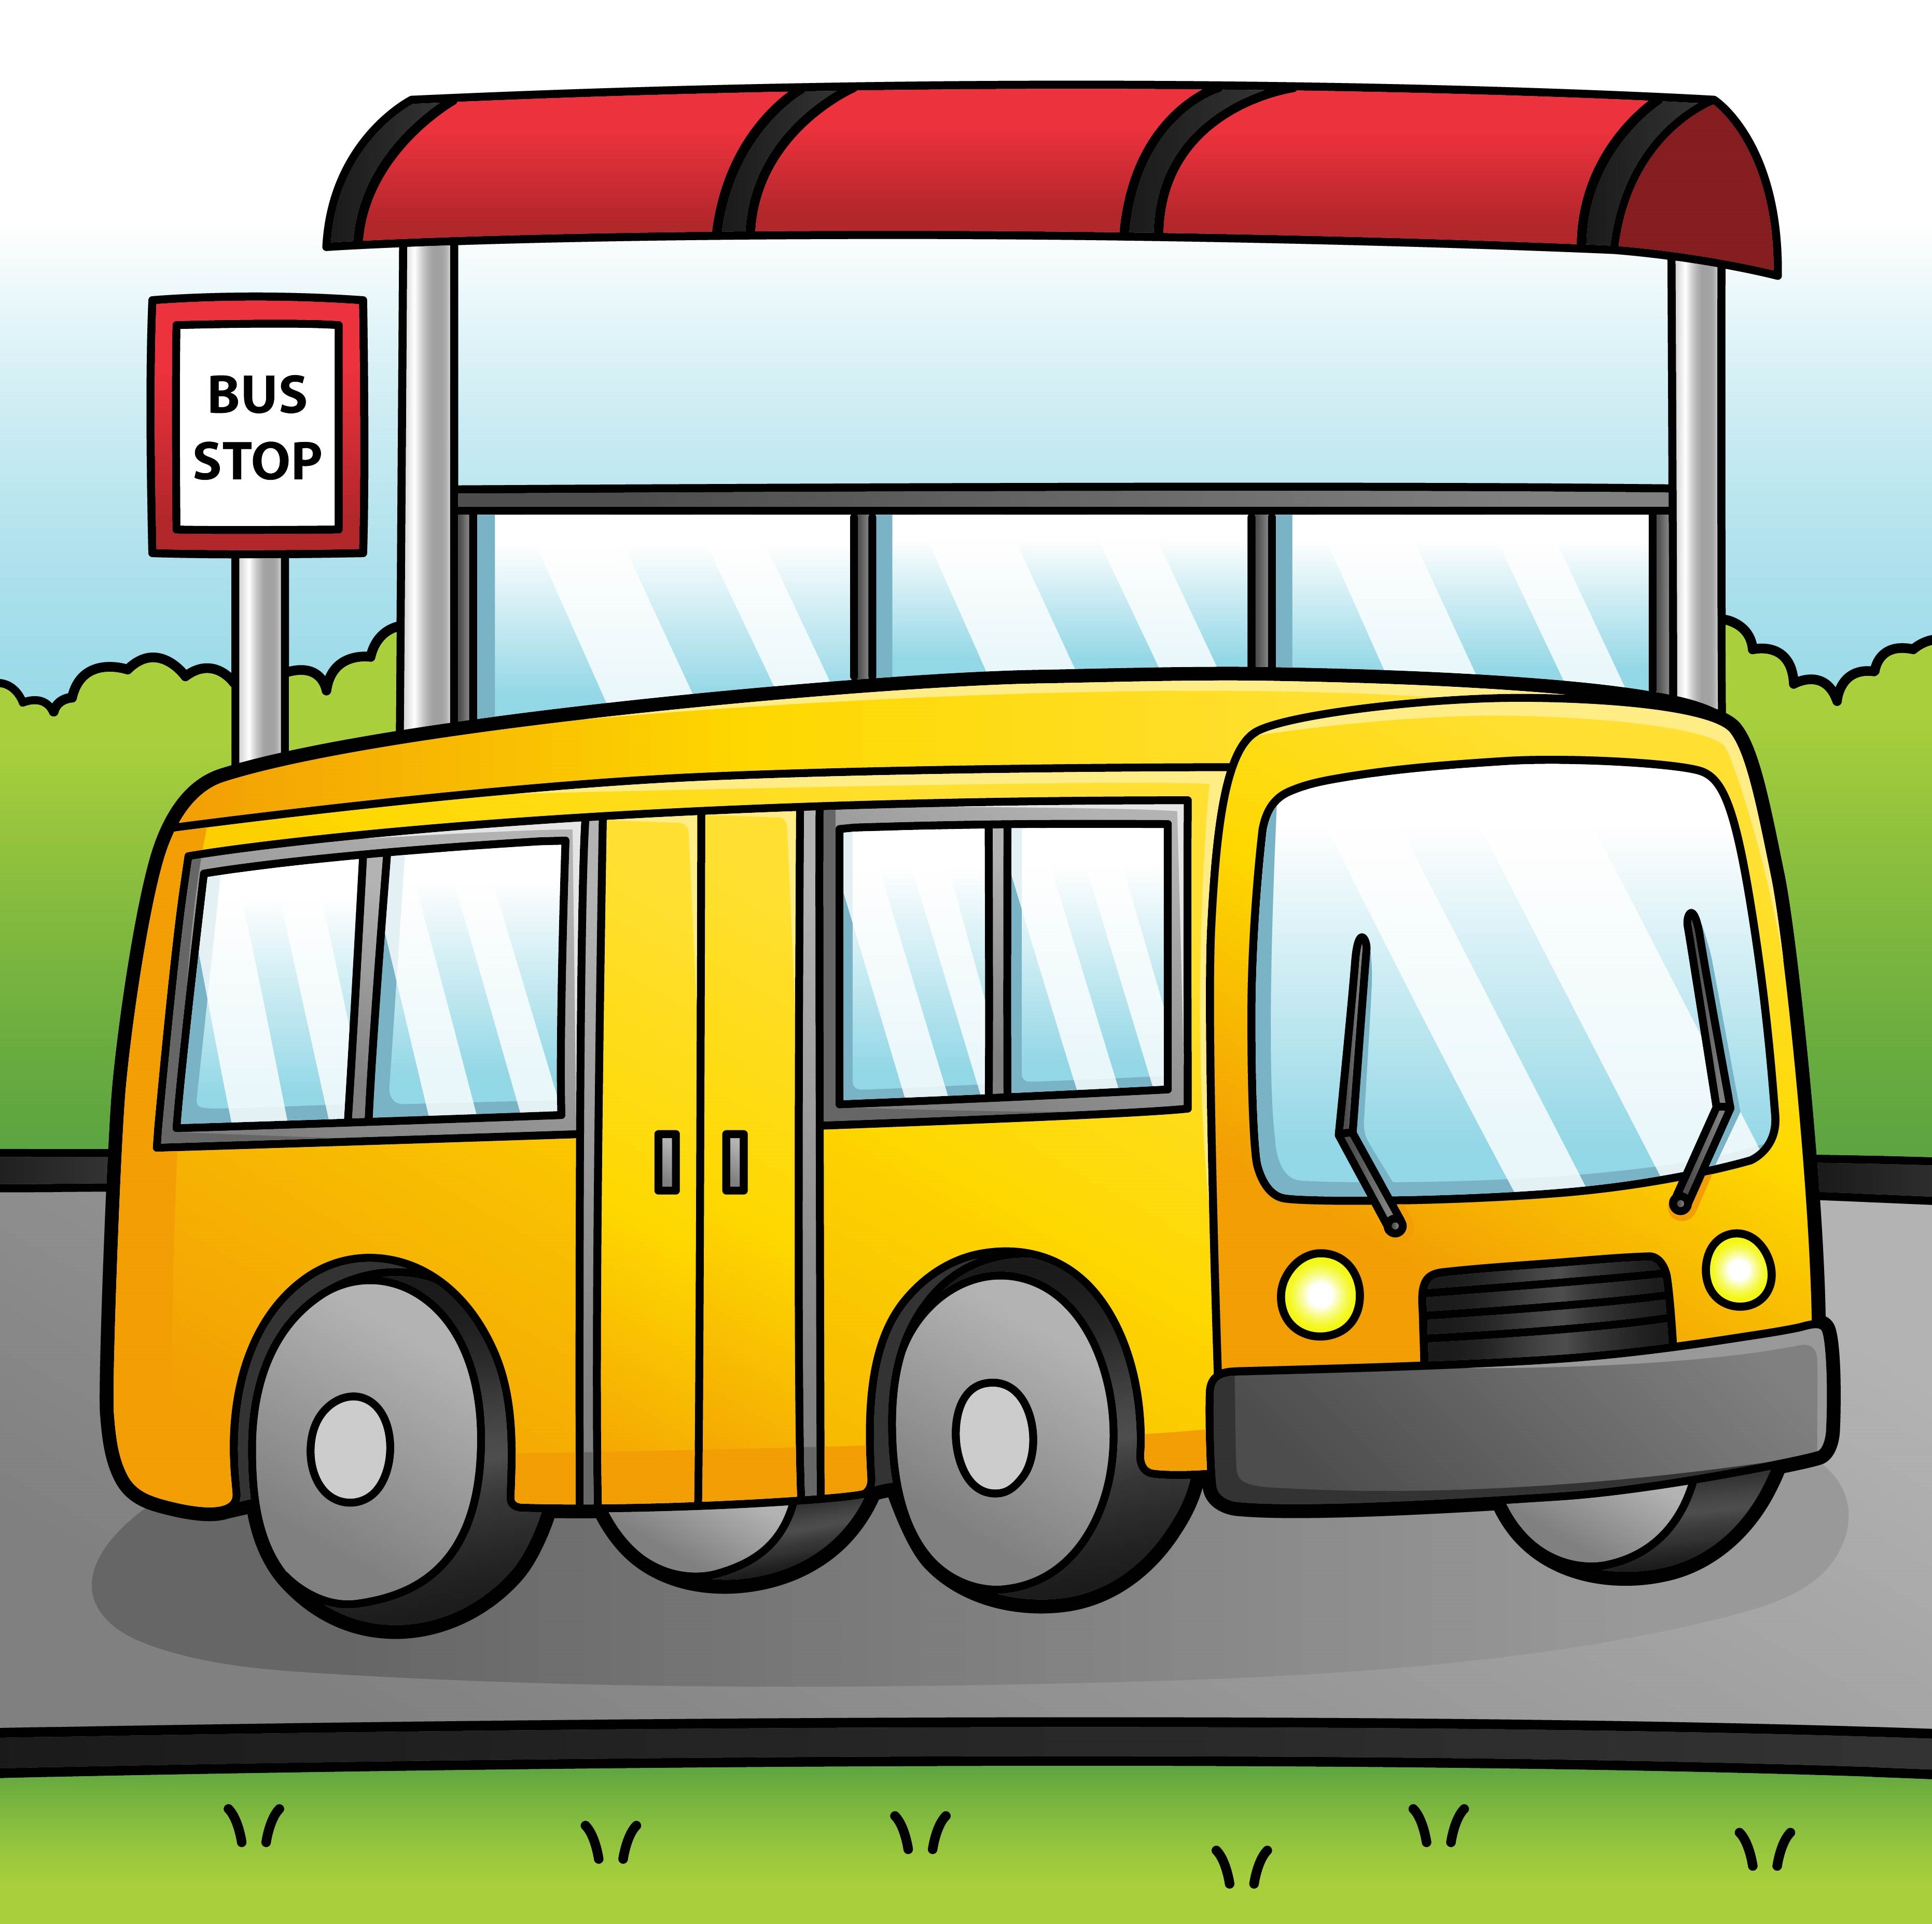 Раскраска автобус пазик стоит на остановке формата А4 в высоком качестве